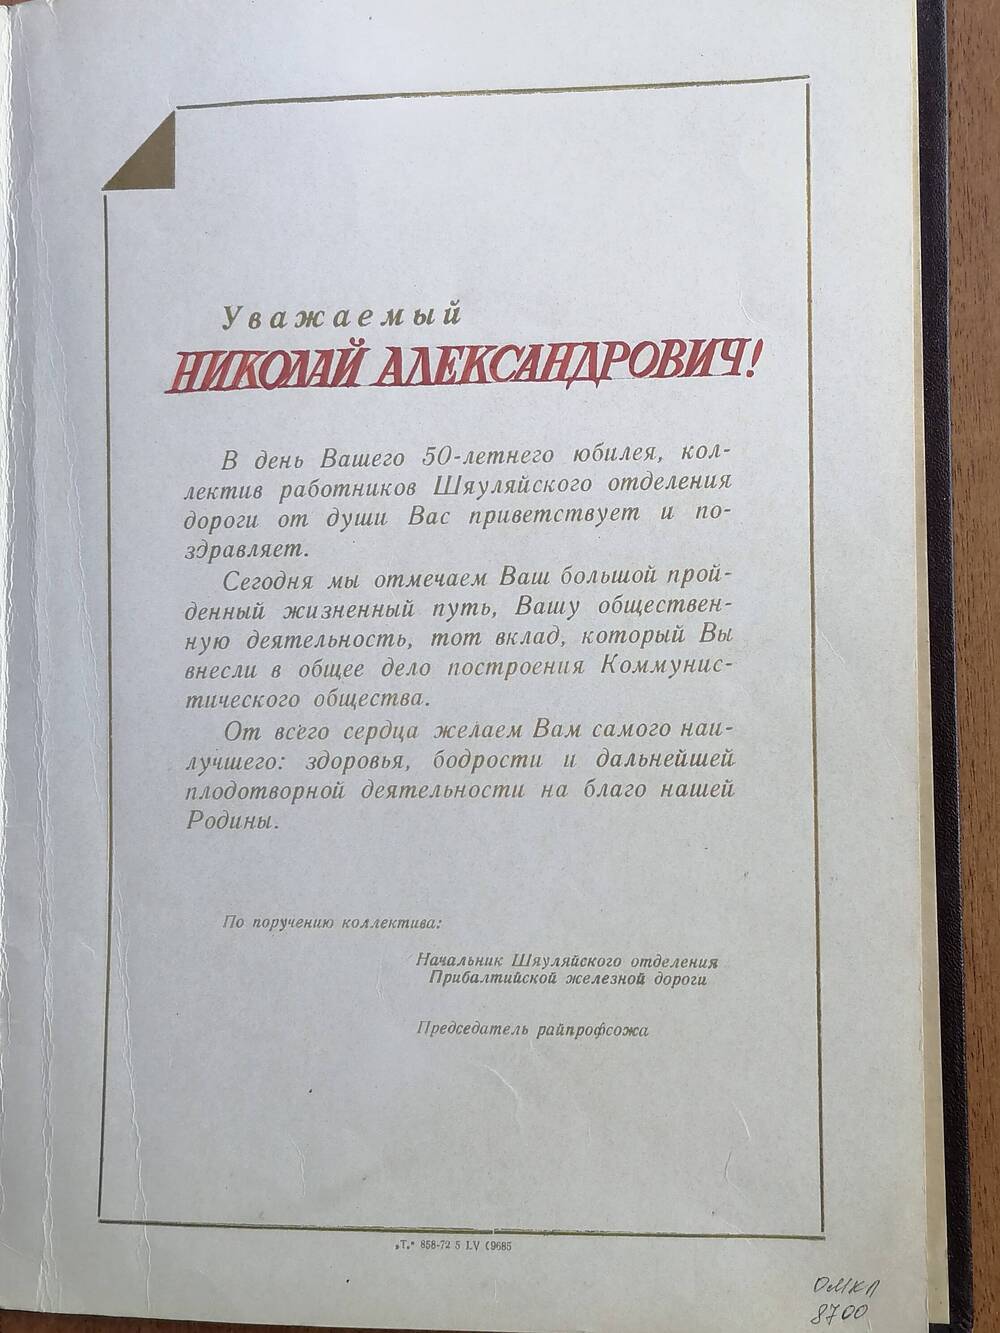 Письмо поздравительное Гришакова Николая Александровича в день 50-летнего юбилея, поздравляет коллектив работников Шауляйского отделения дороги